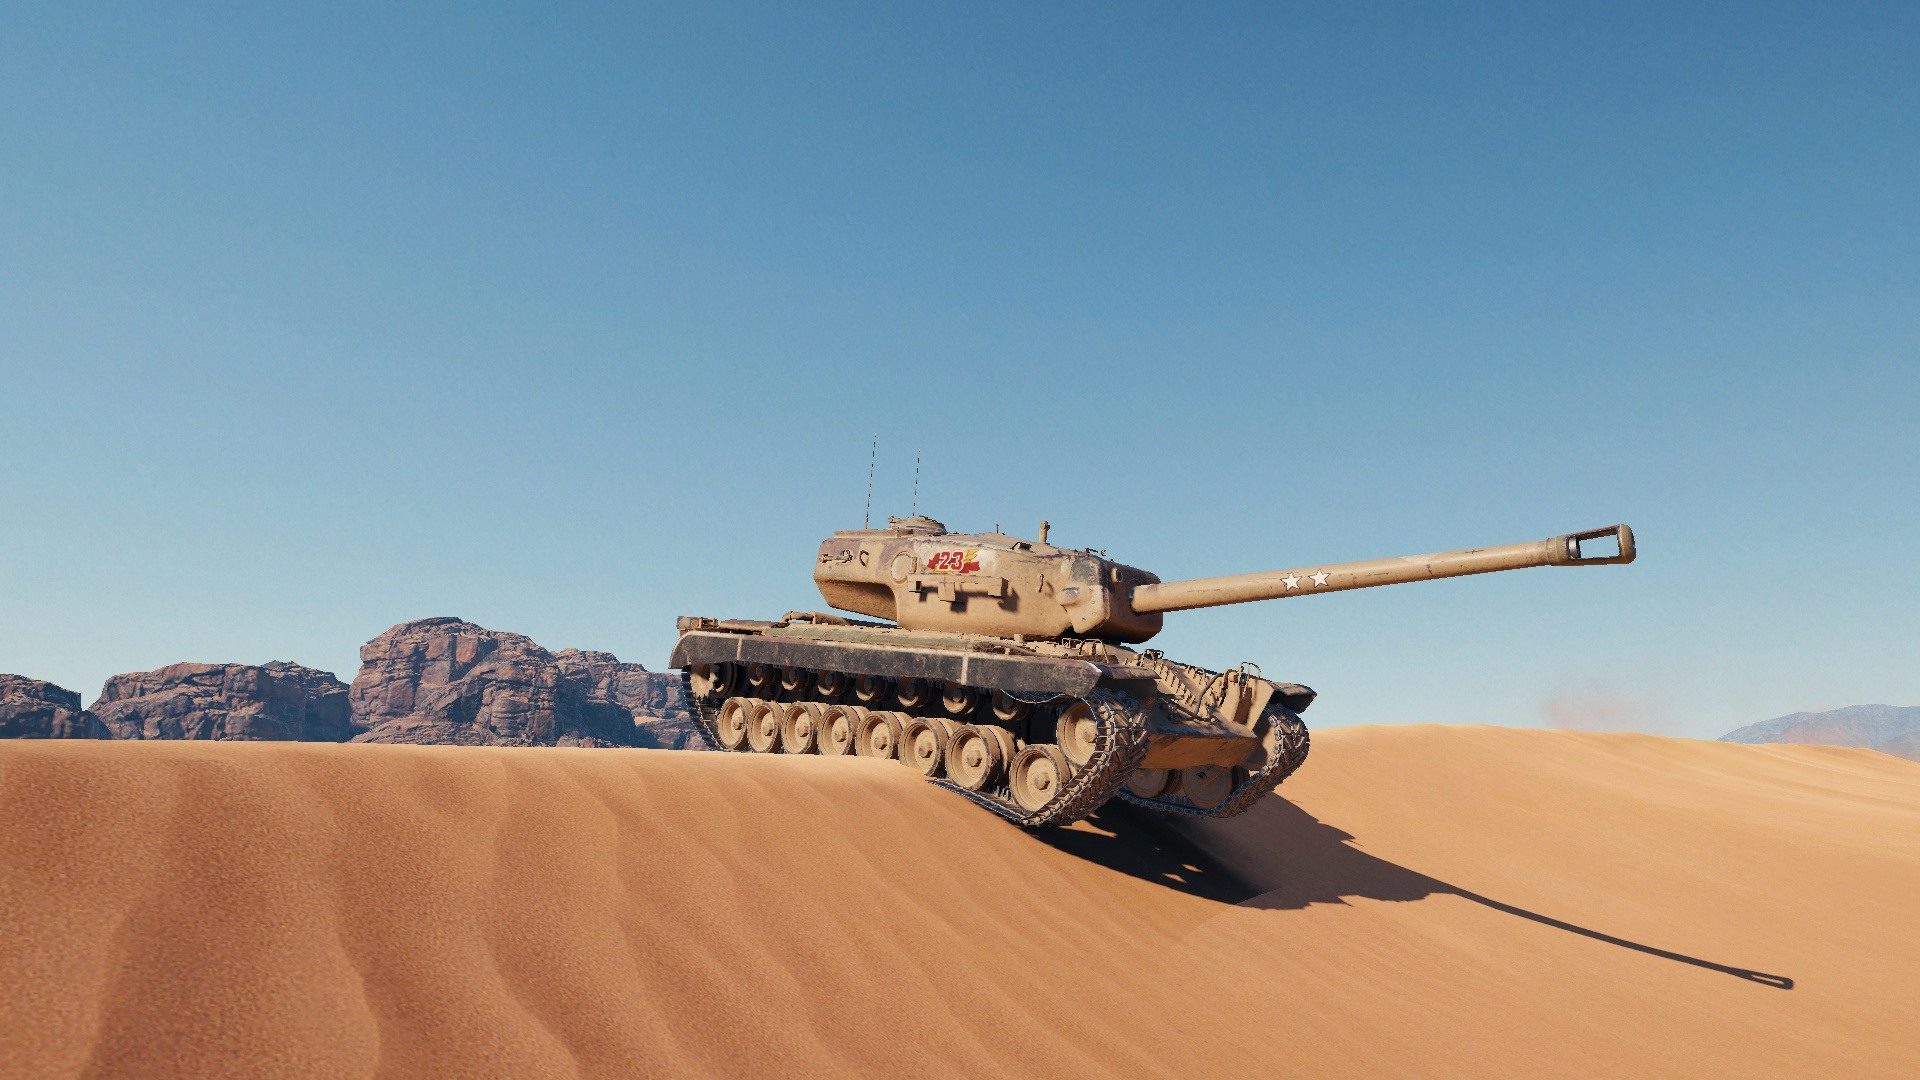 Wallpaper Tank, Desert - Erg , HD Wallpaper & Backgrounds